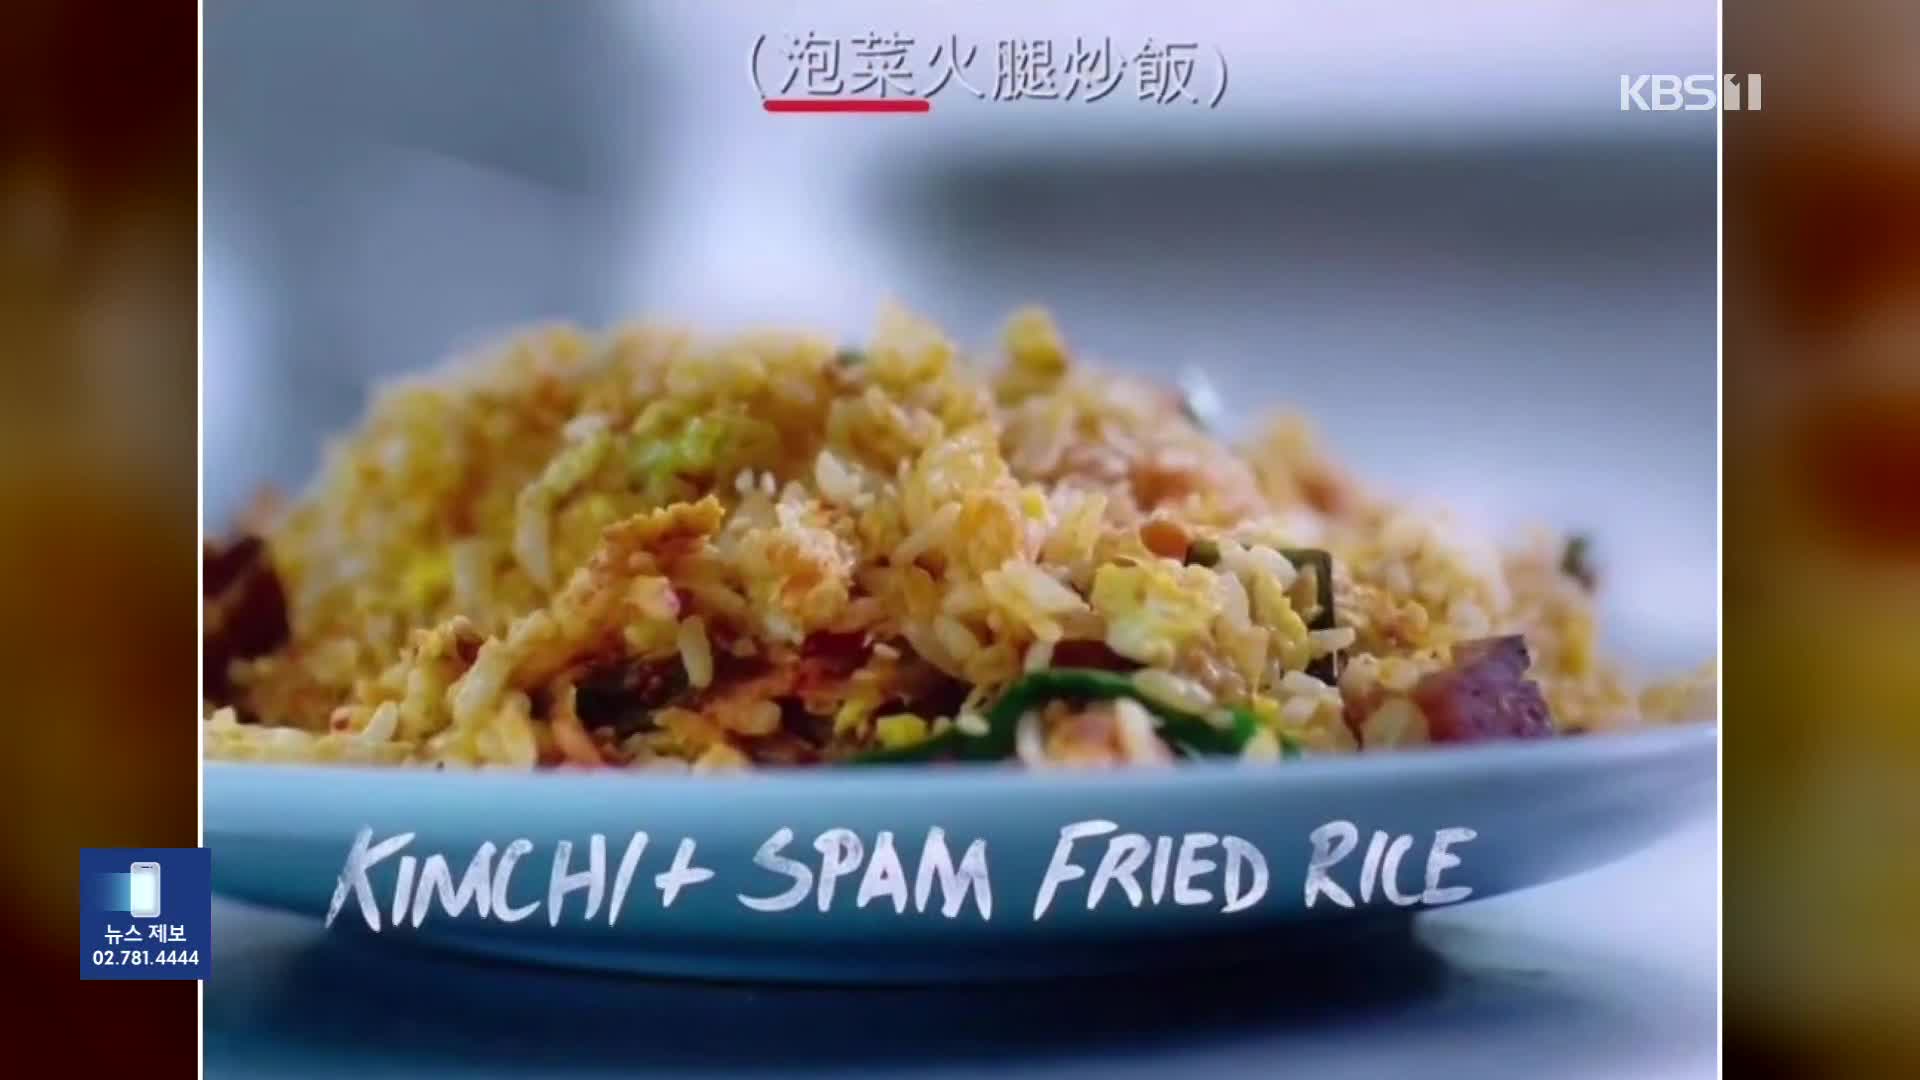 넷플릭스, ‘김치’가 중국 음식?